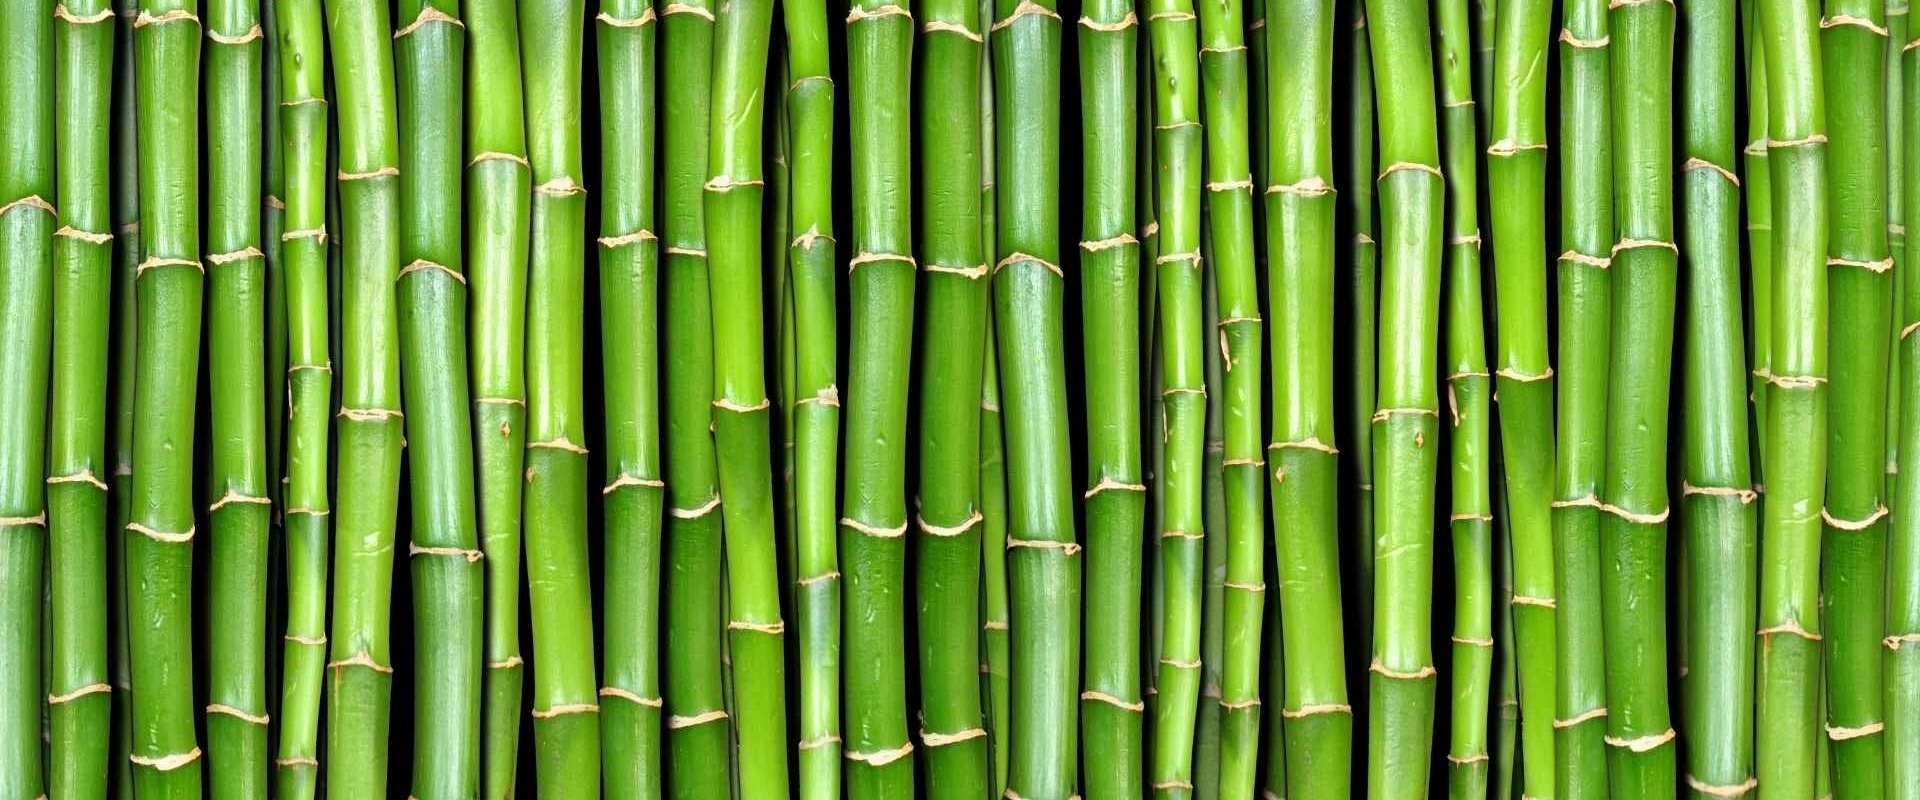 Waarom is bamboe populair?